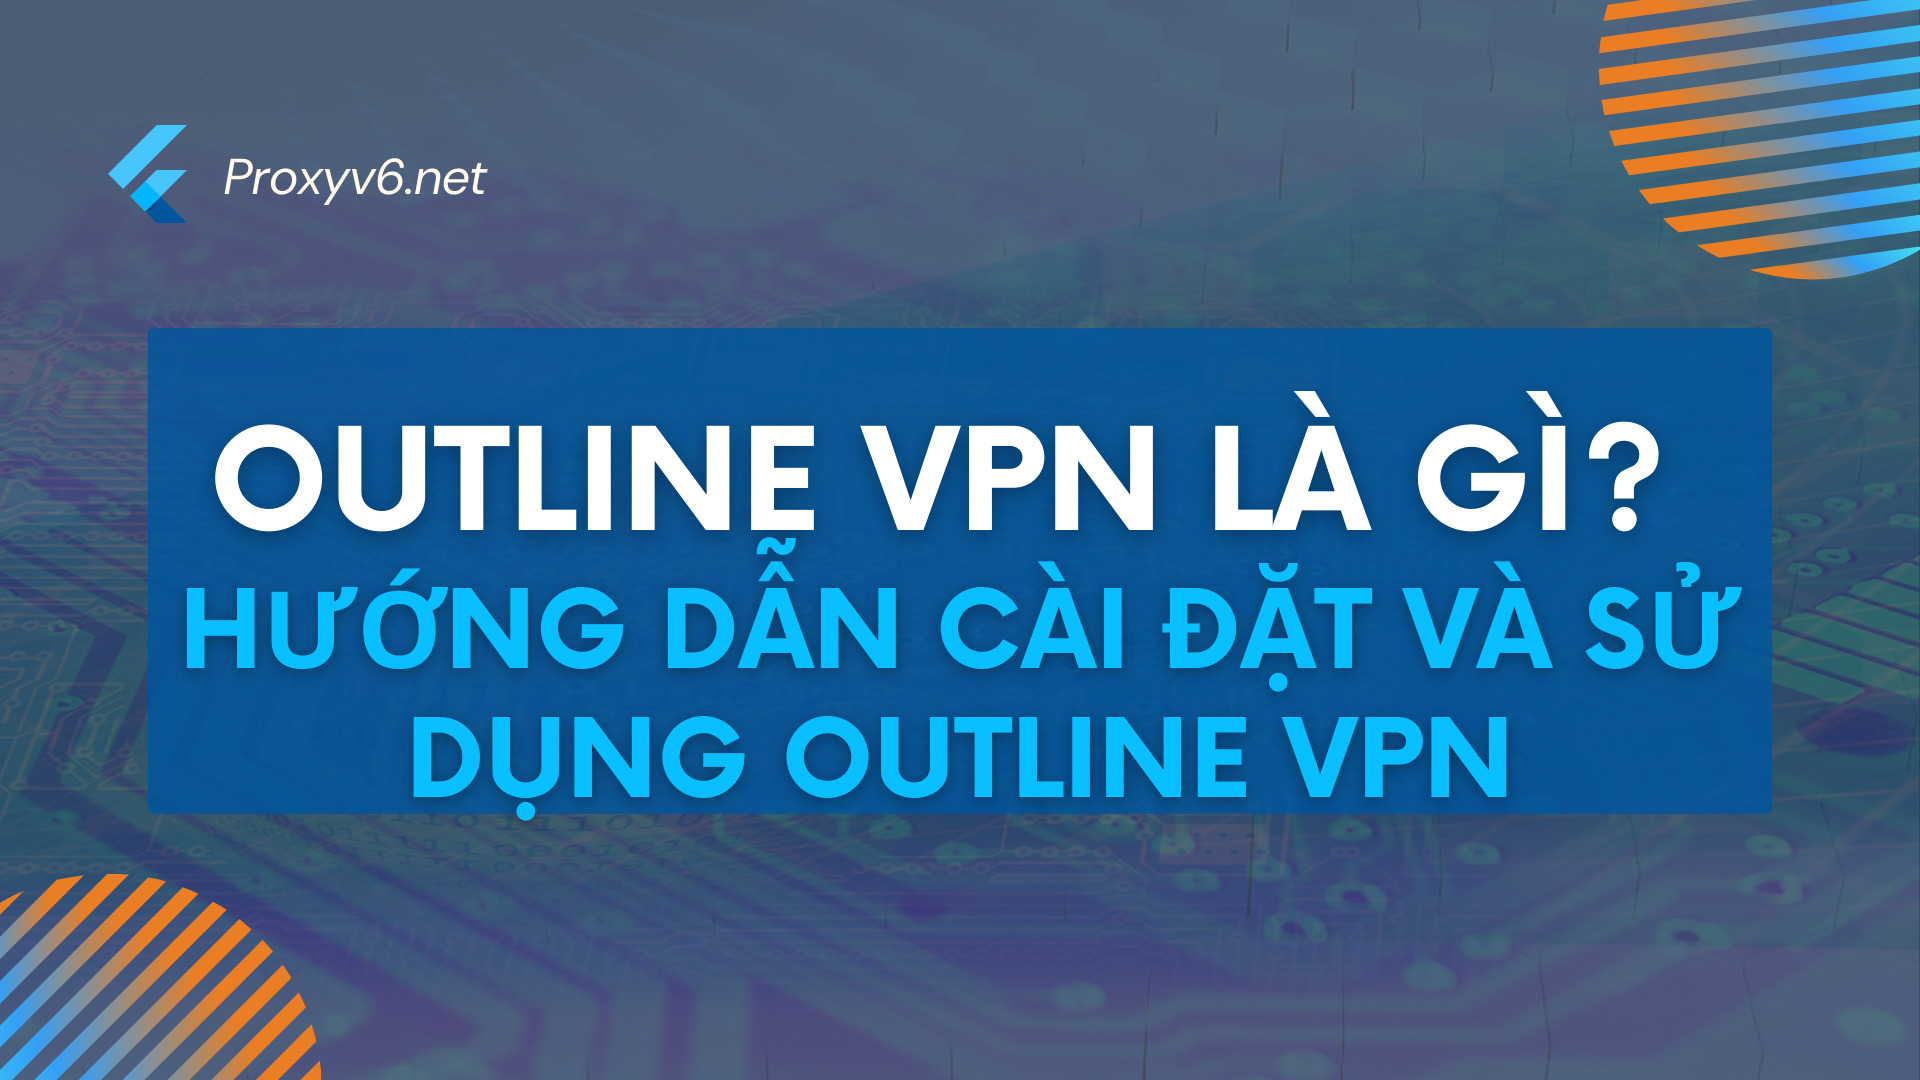 Outline VPN là gì? Hướng dẫn cài đặt và sử dụng Outline VPN